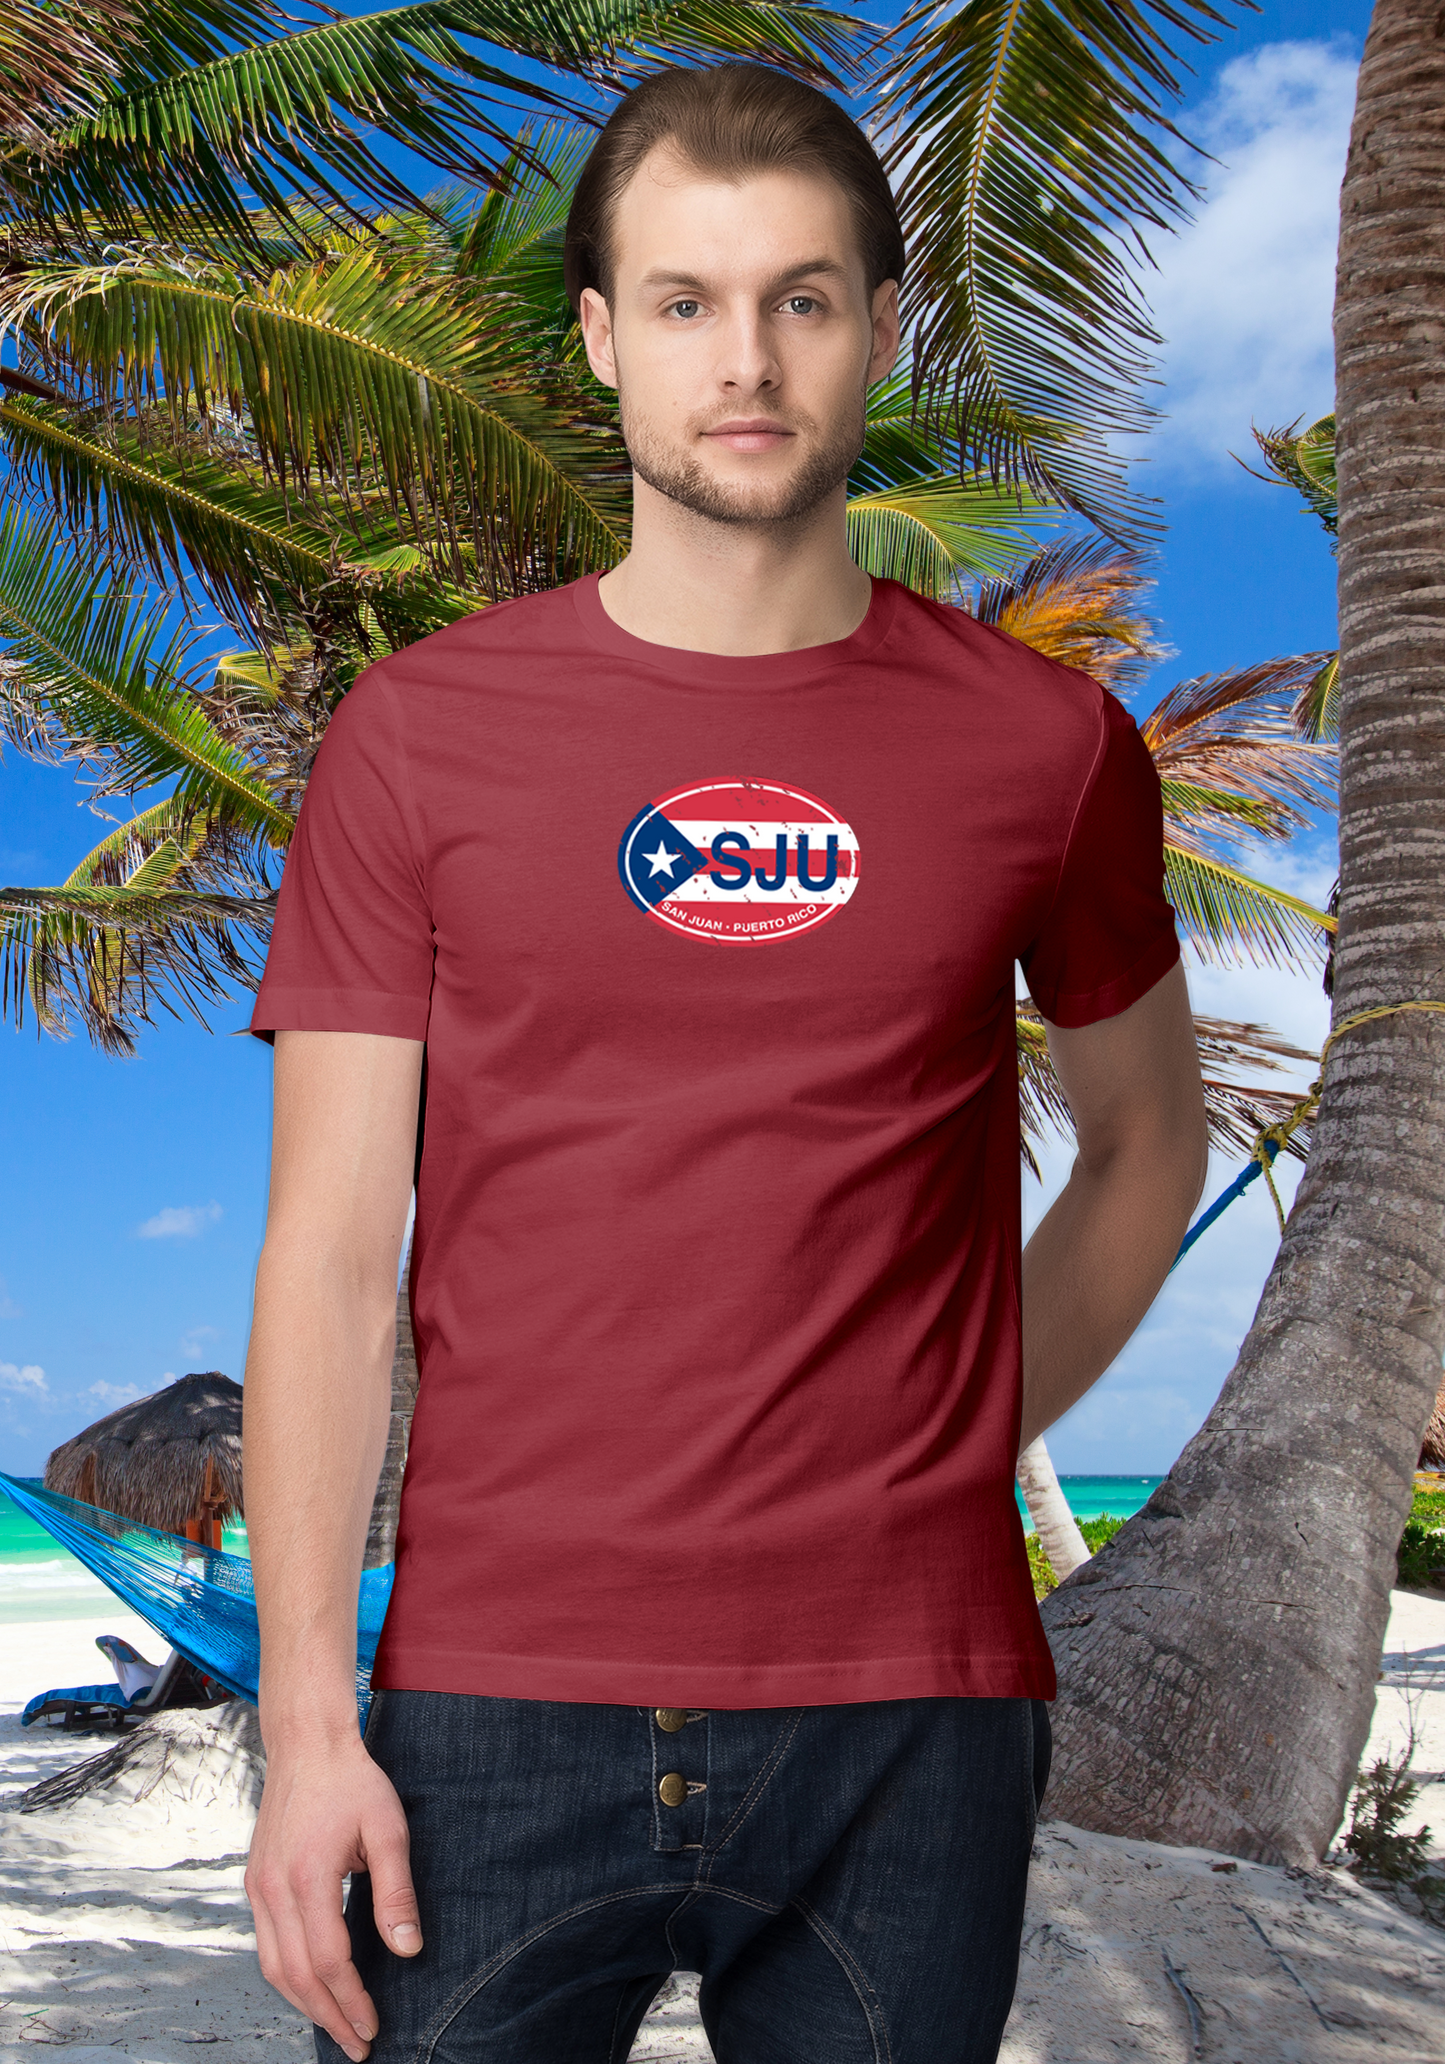 San Juan Puerto Rico Men's Flag T-Shirt Souvenirs - My Destination Location